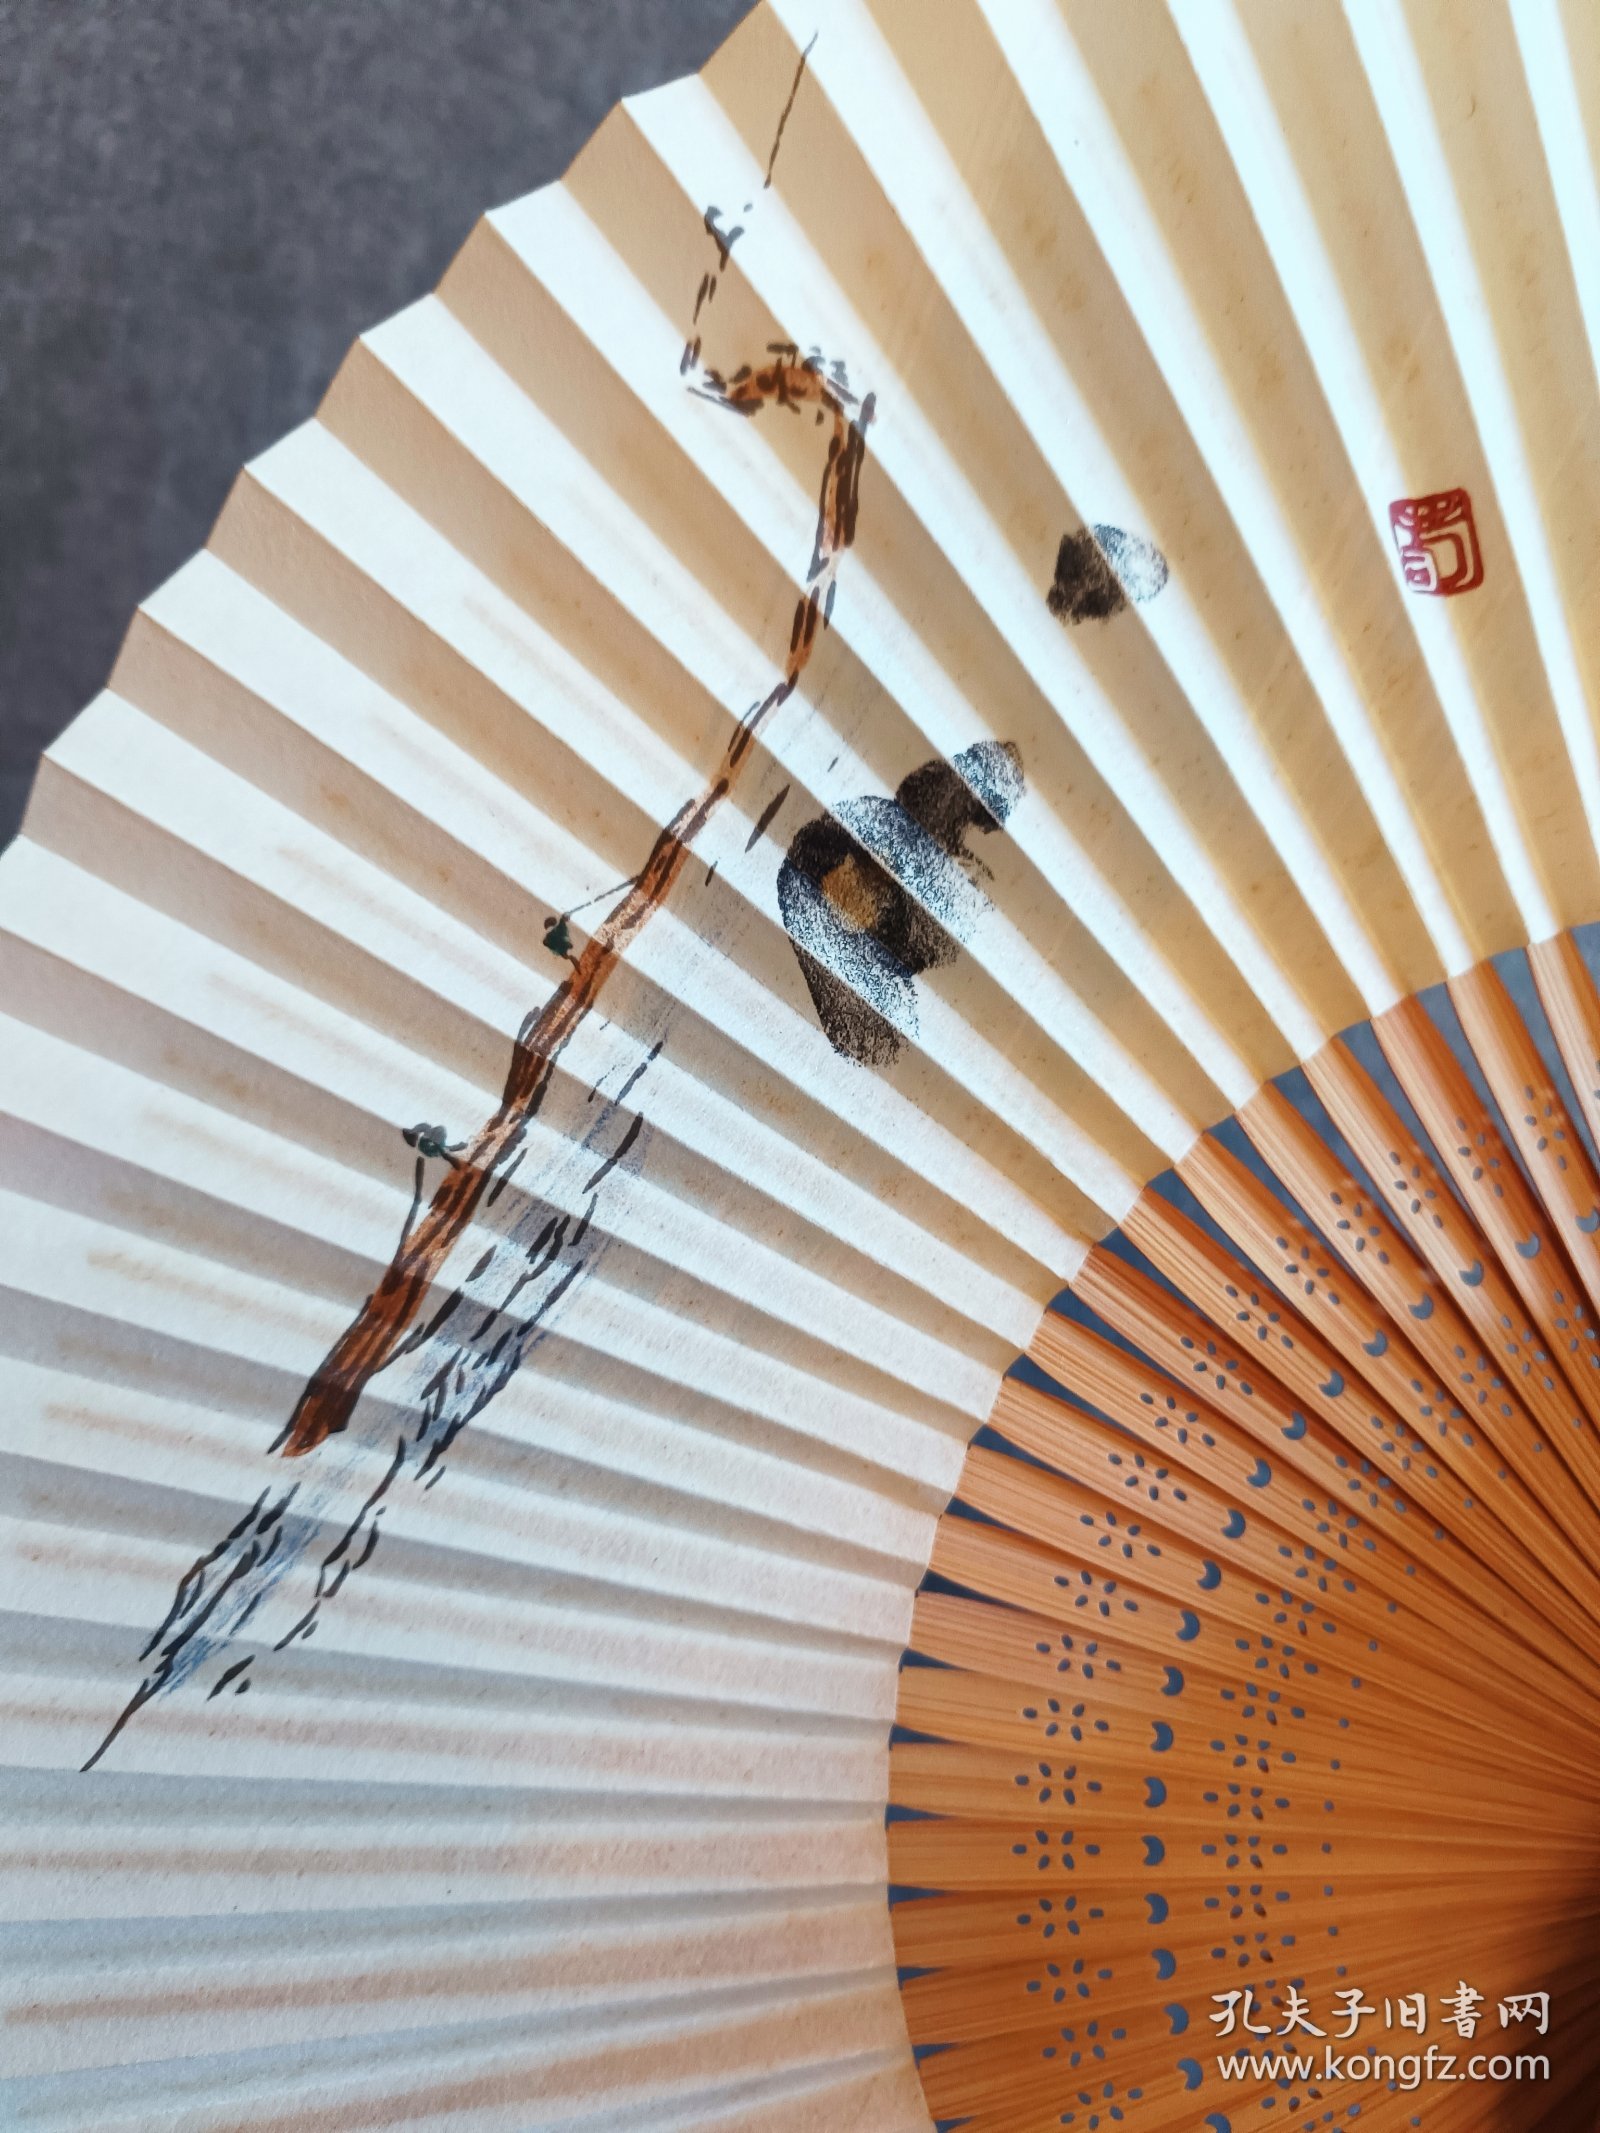 航 日本回流京扇纸扇 手工设色 扇高22Cm，展开最宽幅39Cm，竹骨扇，碧珠吊，保管好，自然旧品。